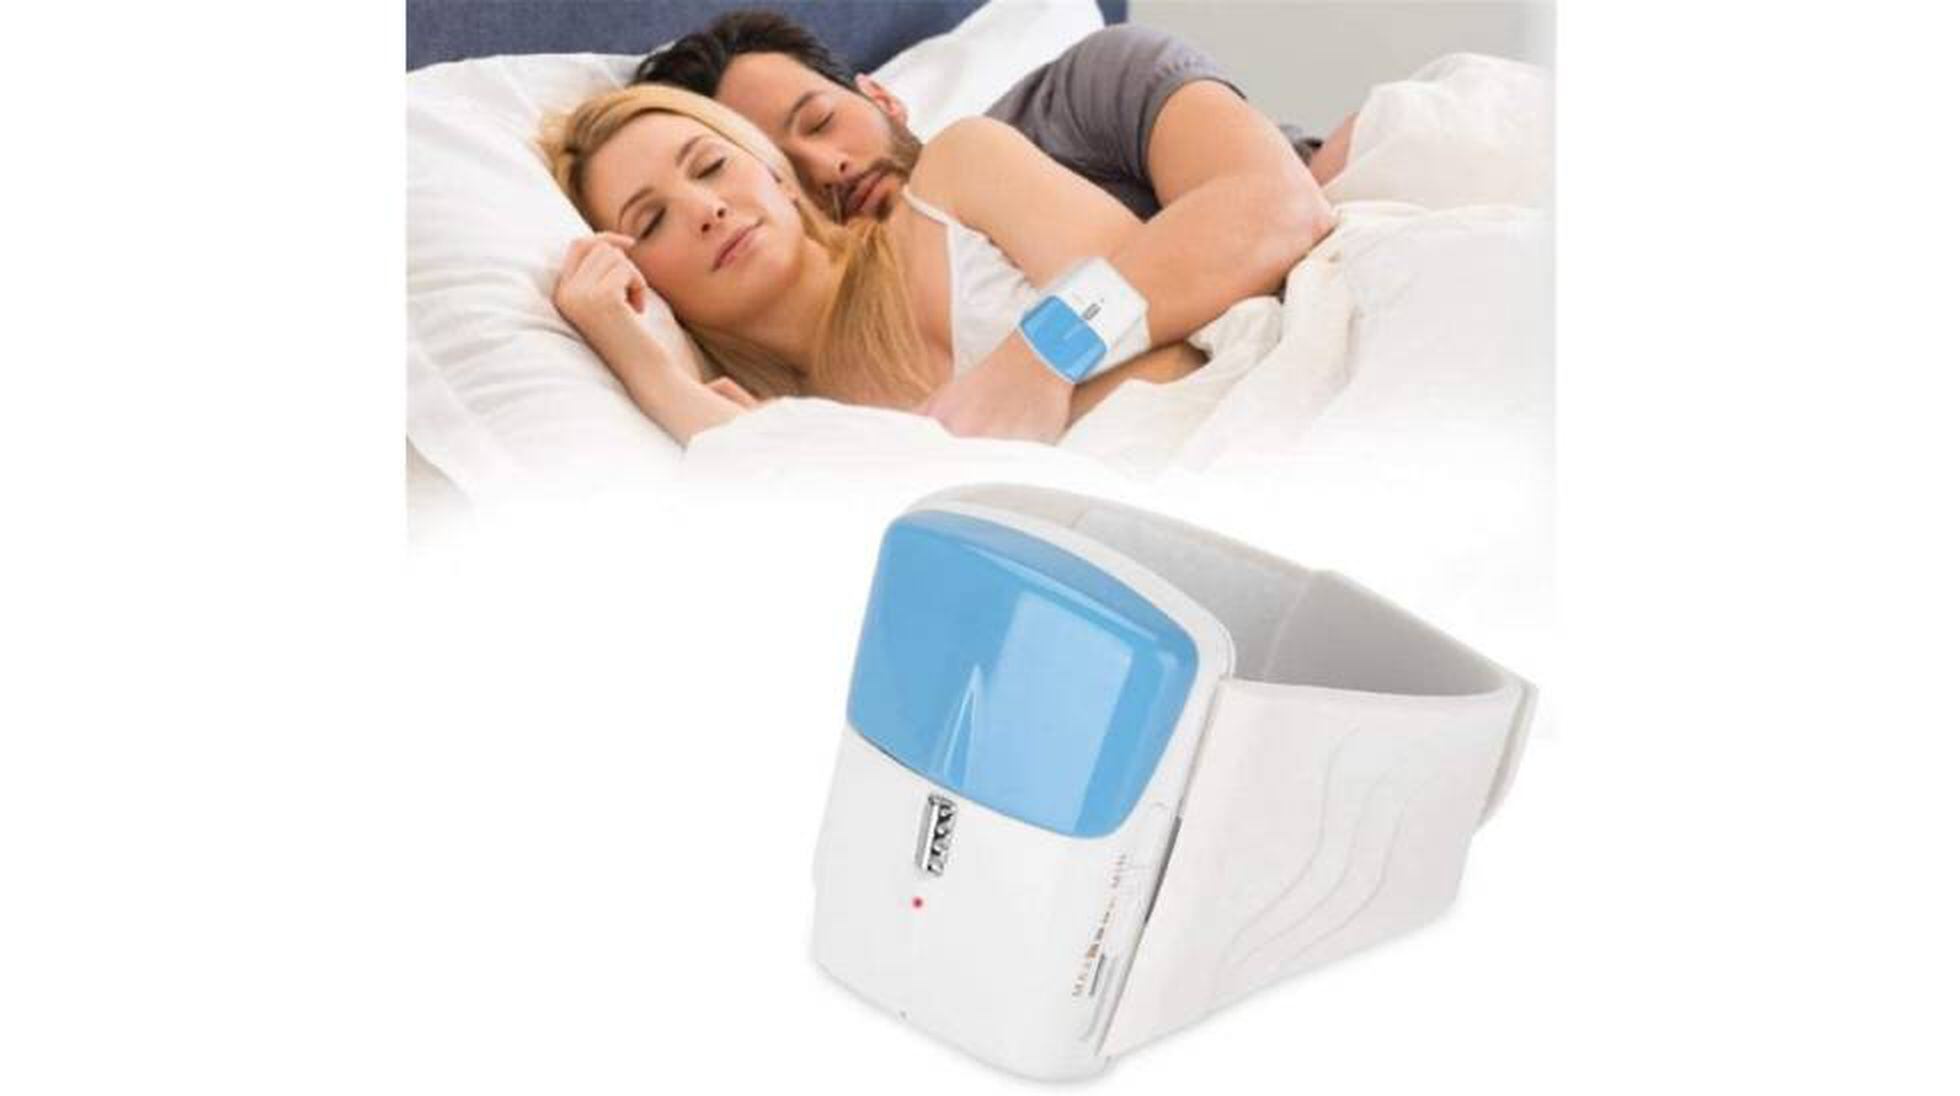  Hush - Dispositivos antironquidos ayudan a detener los  ronquidos para un mejor sueño, Dilatador nasal ayuda para dormir aumenta  el flujo de aire y funciona al instante